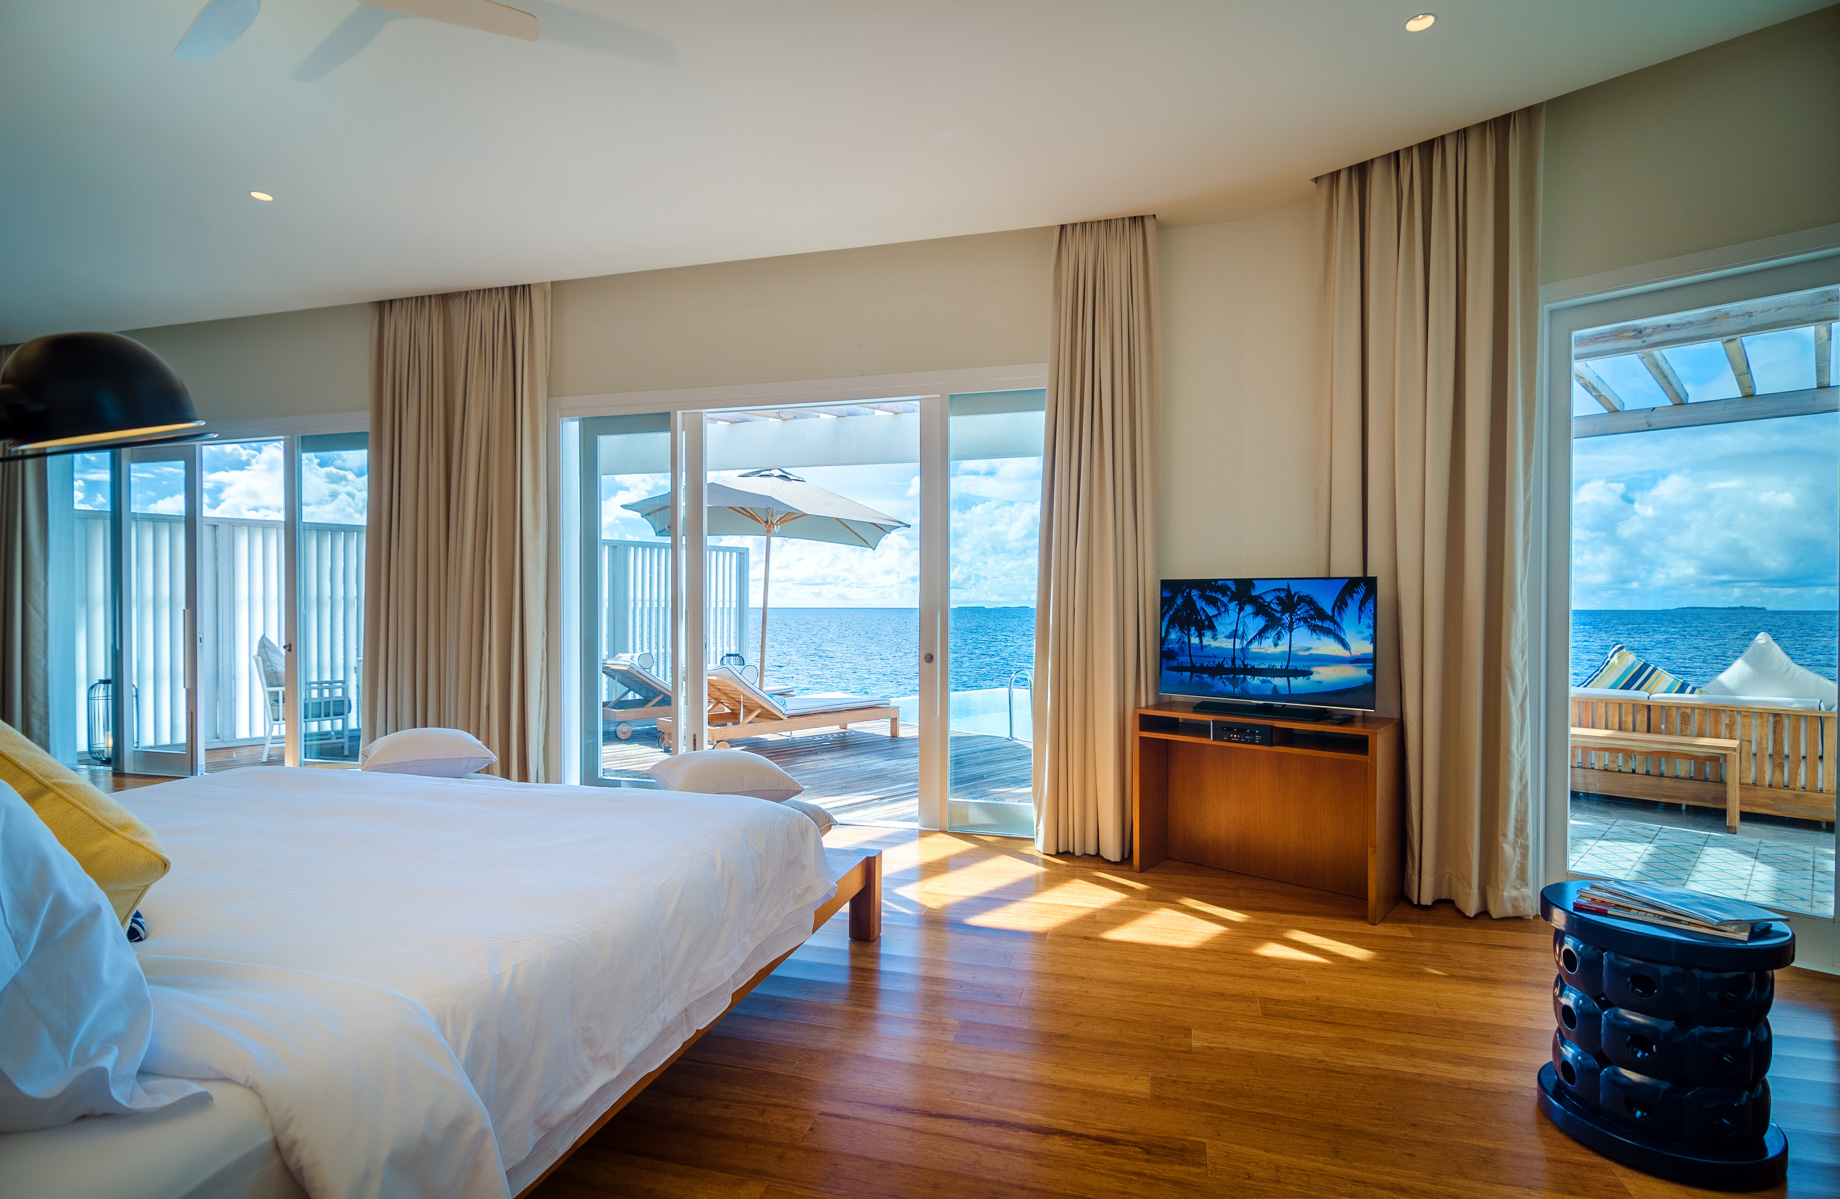 Amilla Fushi Resort and Residences - Baa Atoll, Maldives - Reef Water Villa Bedroom View